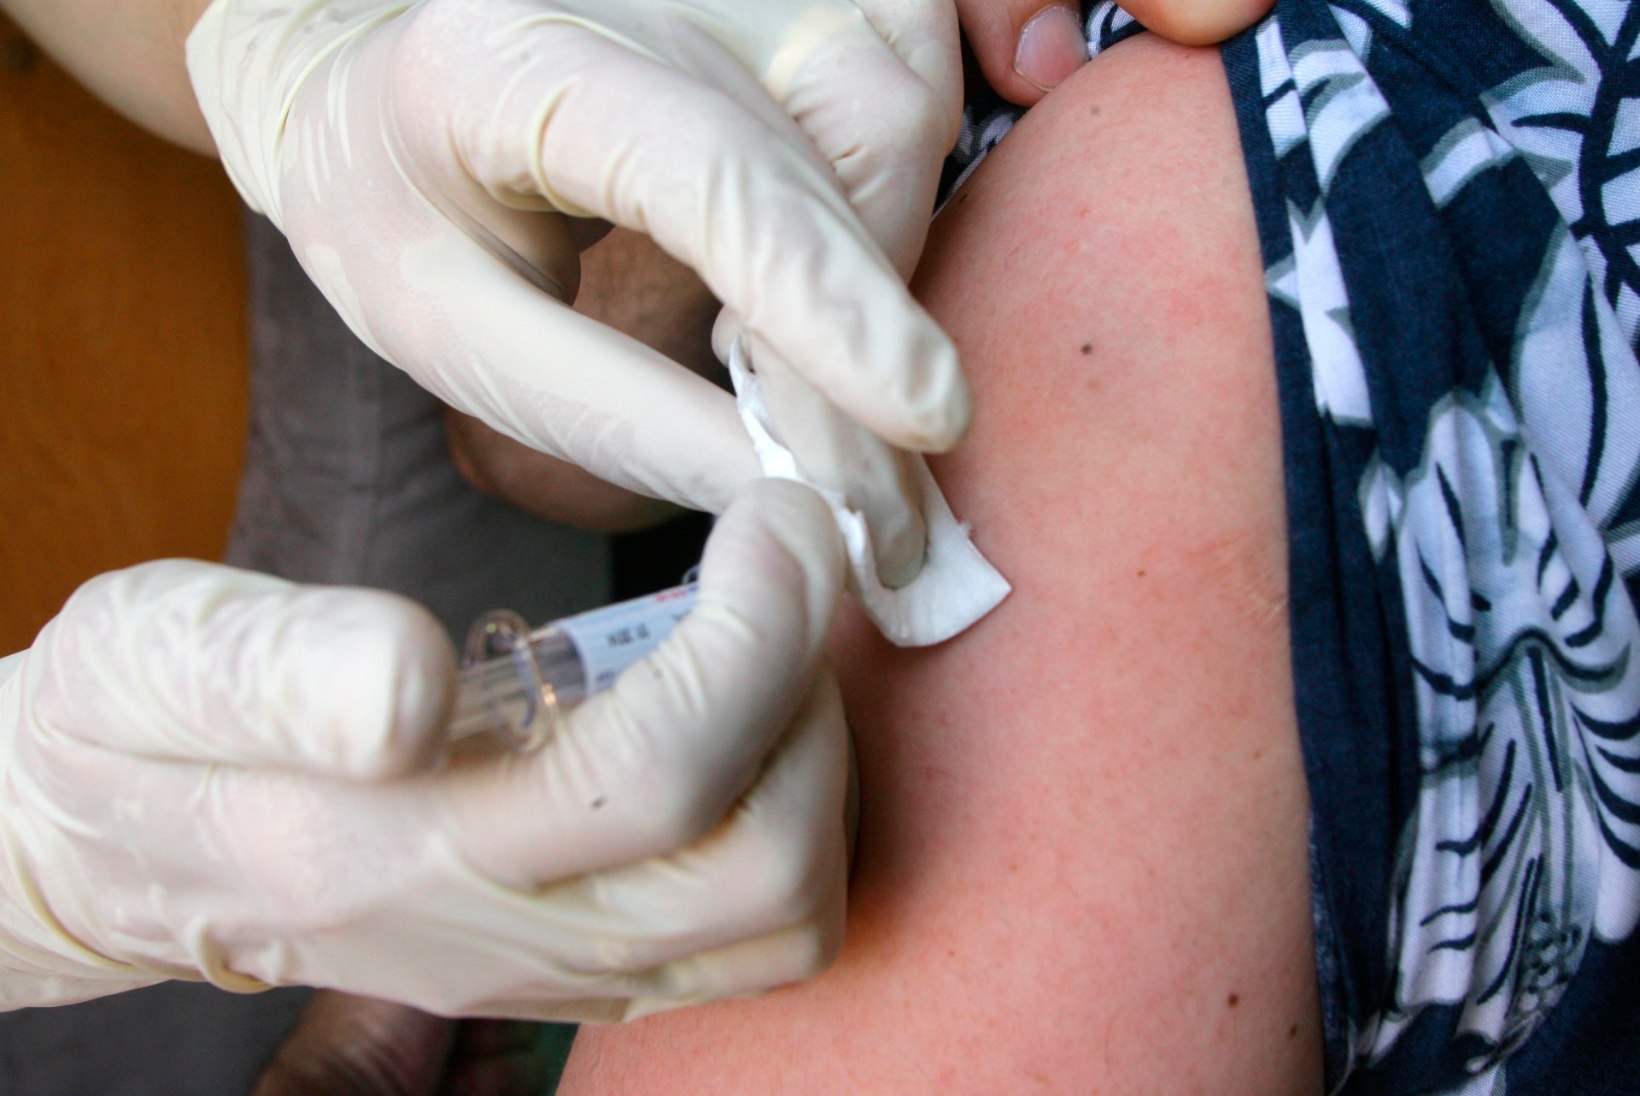 Lähivaade vaktsineerimisele - kas on üldse vastuargumente?